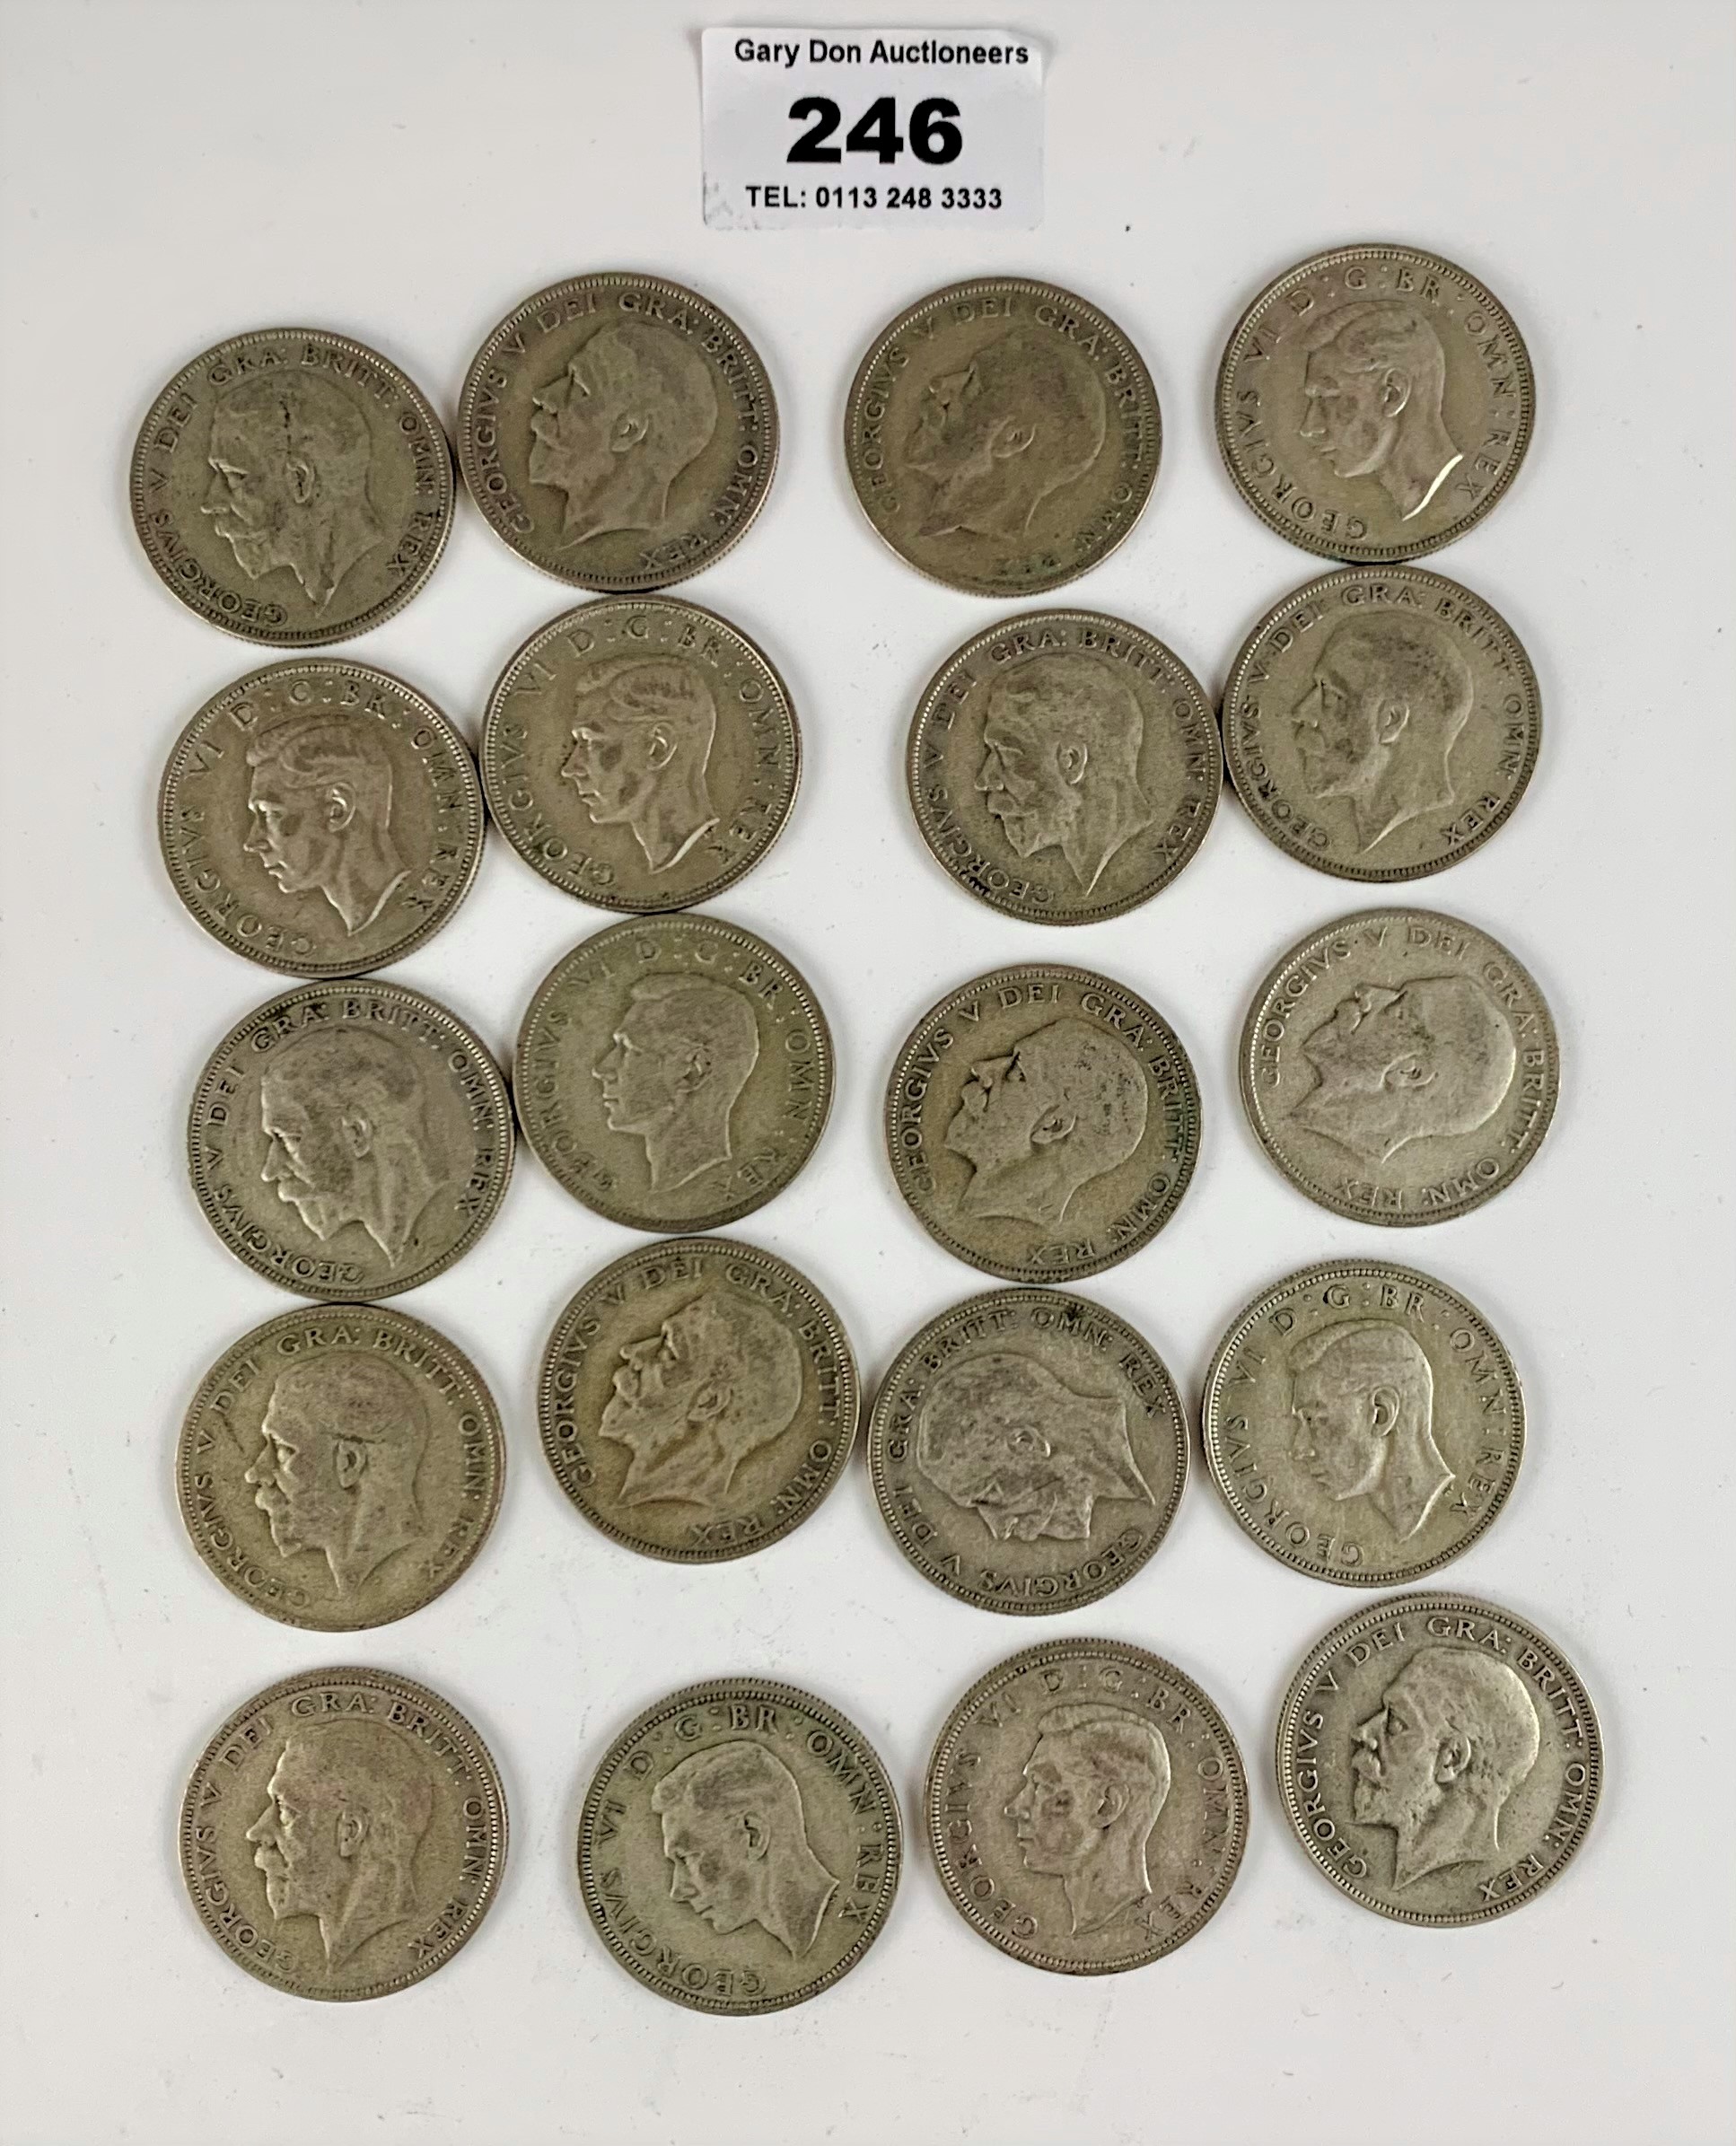 20 Half crown coins, pre-1947, half silver, w: 9 ozt - Image 2 of 2